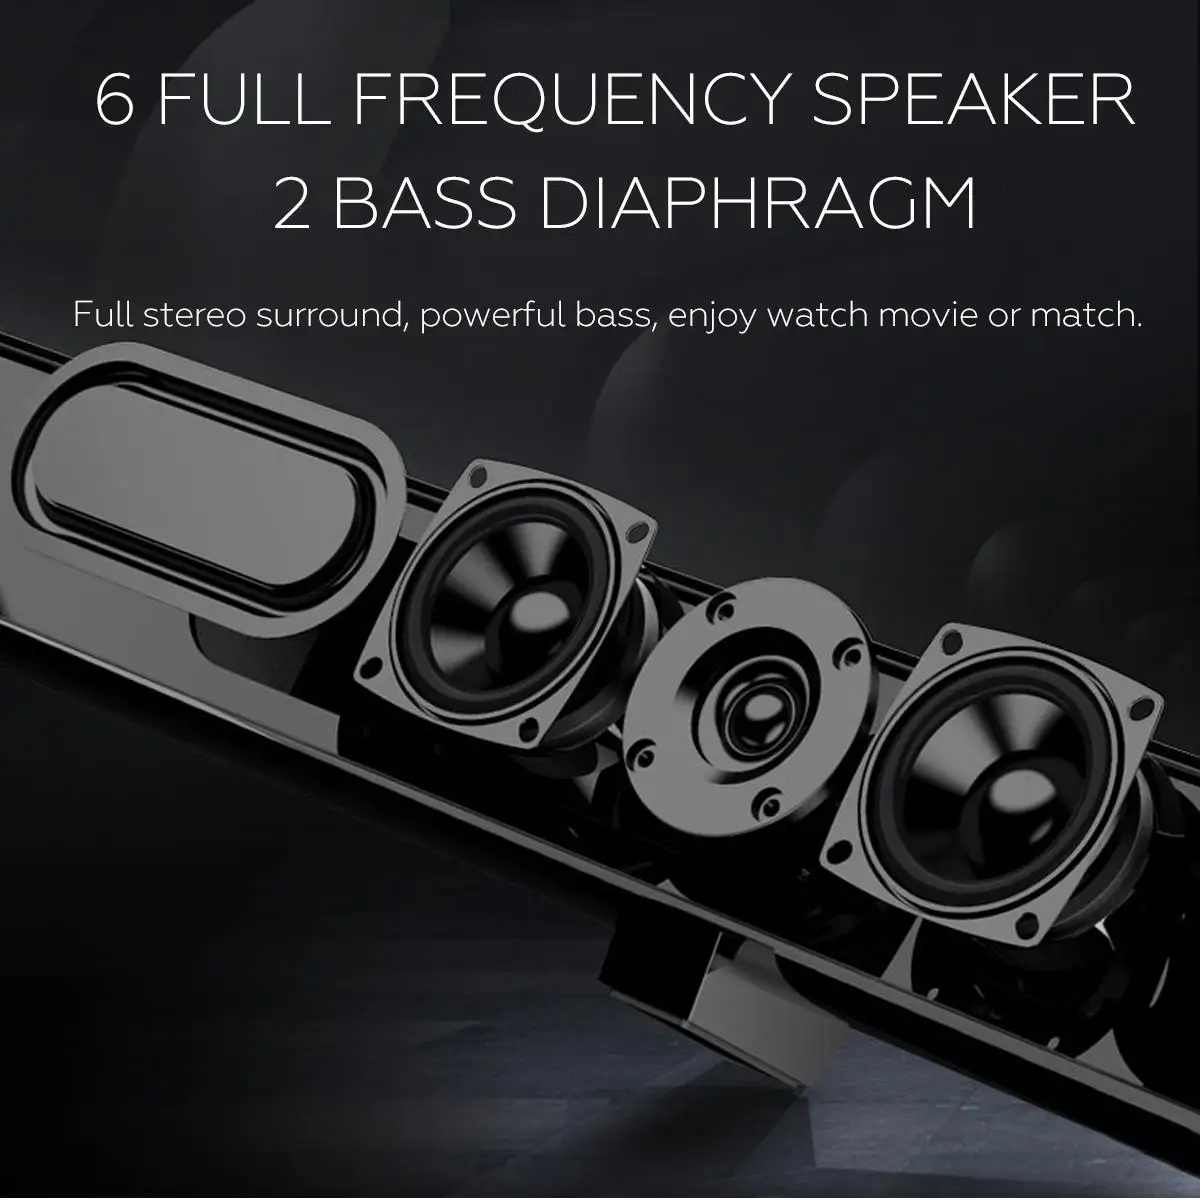 50W 100 cm HiFi Odnímateľný Bezdrôtový bluetooth zariadenia Soundbar Speaker 3D Surround Stereo Subwoofer pre TV Systém domáceho kina Zvuk Bar